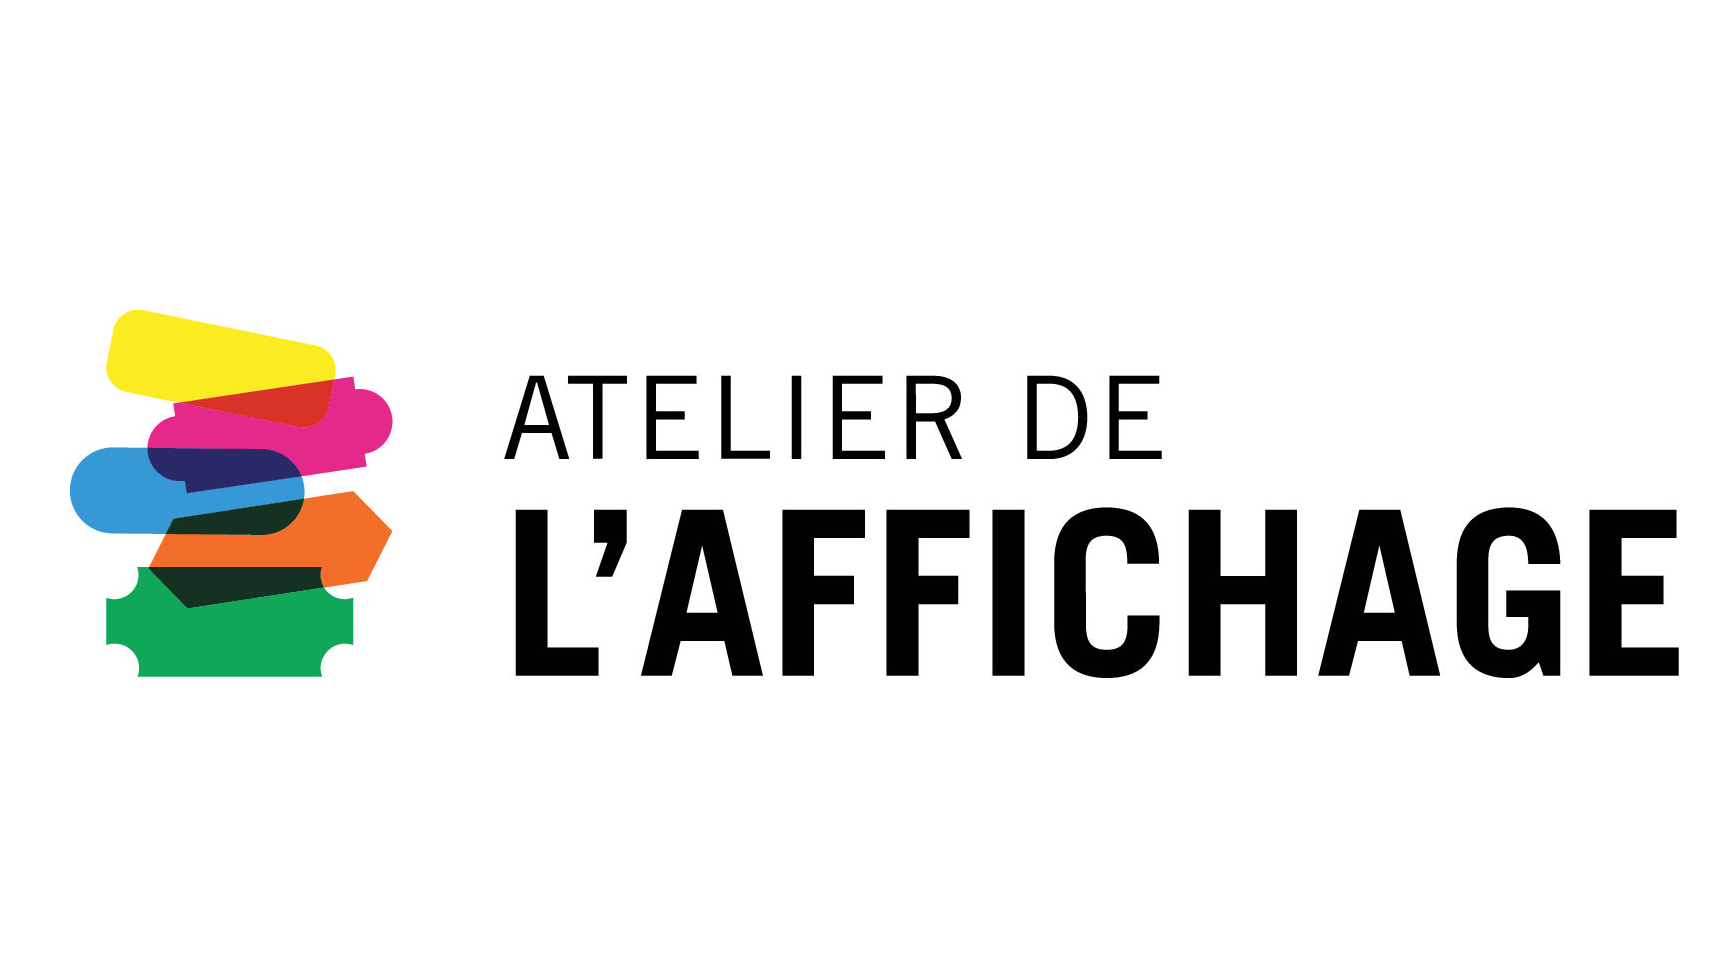 Atelier De l'Affichage/Sign Shop Dorval (514)631-7375